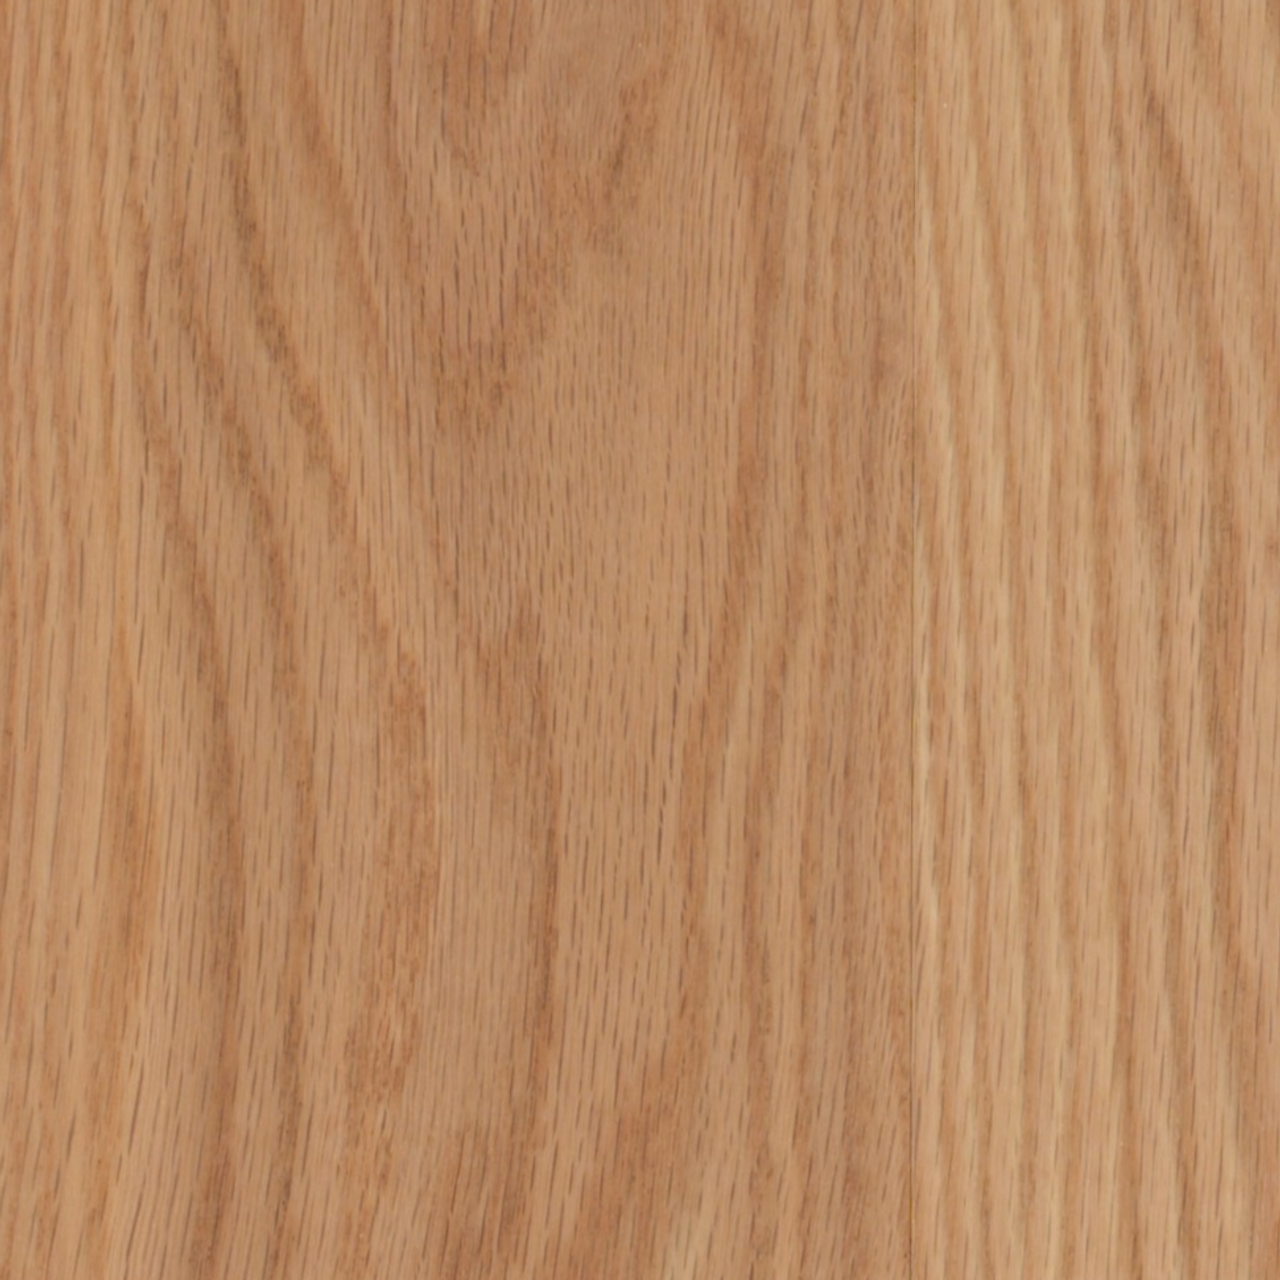 Lauzon Atlas Red Oak Engineered Hardwood Plank